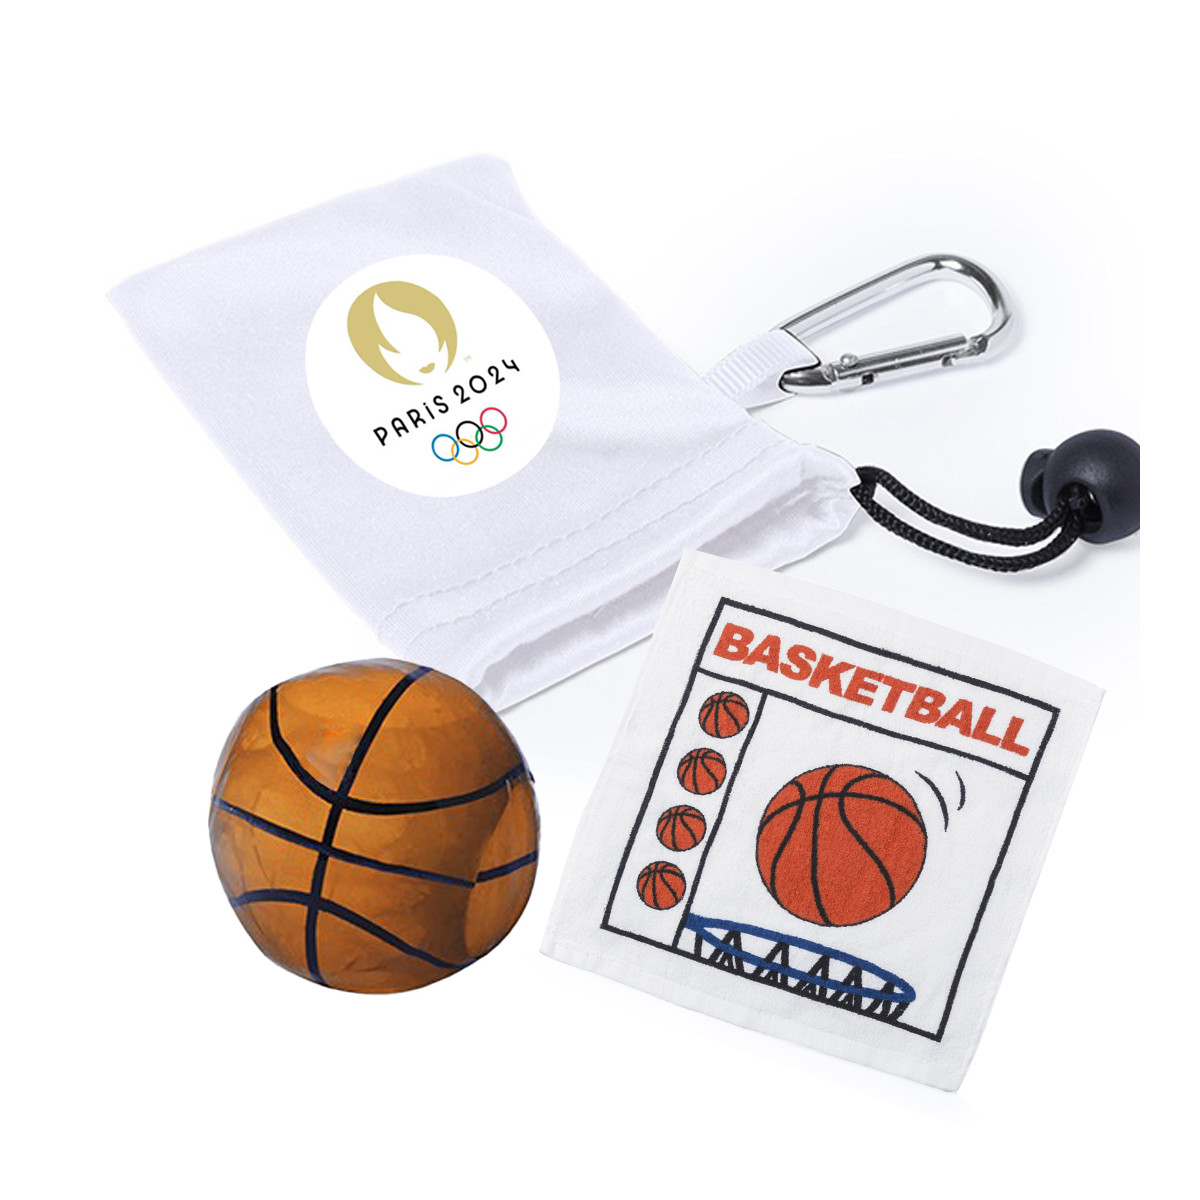 Toallas en forma de pelota de deportes como detalle para los juegos olímpicos con adhesivo